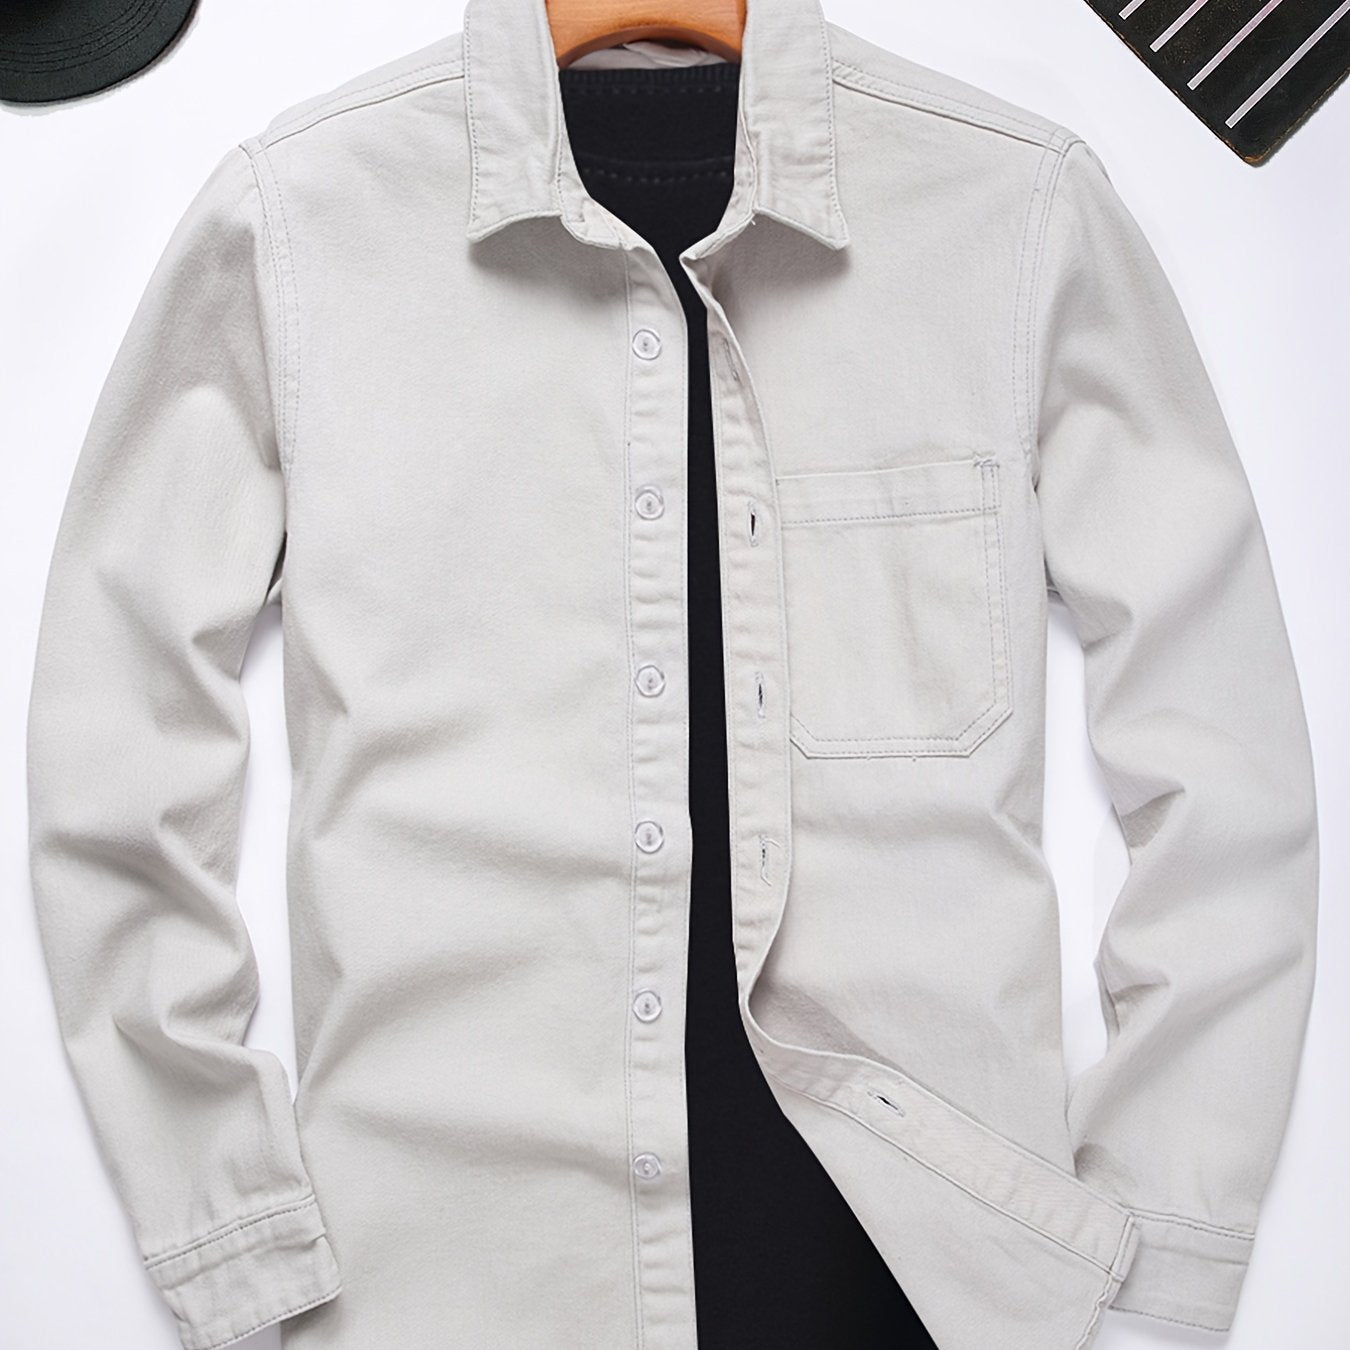 Antmvs Men's Cotton Casual Slim Fit Long Sleeve Lapel Shirt